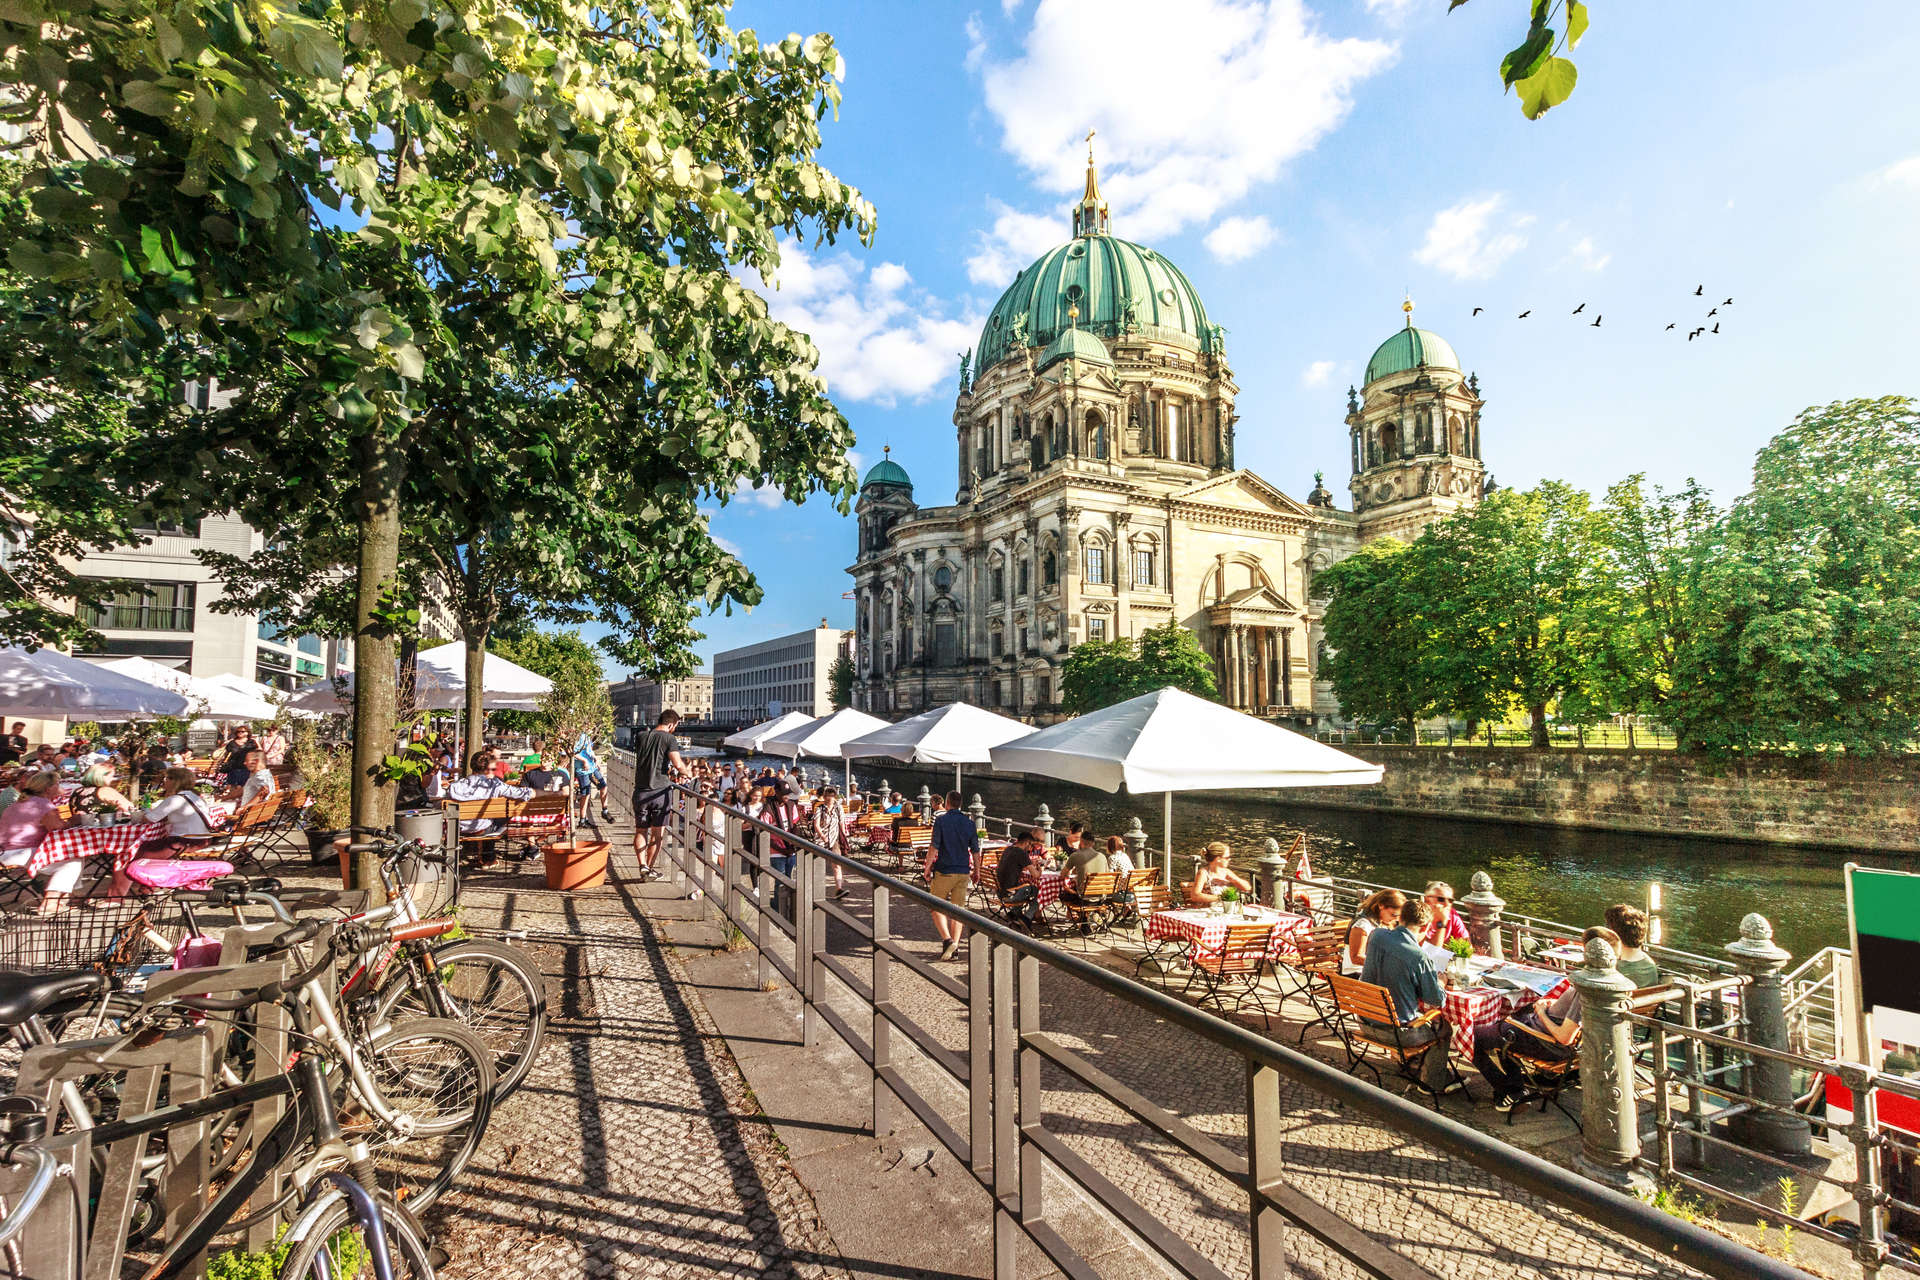  مع ارتفاع درجات الحرارة في برلين في شهر يوليو، تكتسب المناطق الخارجية في المدينة سحرًا وبهاءً فريدً